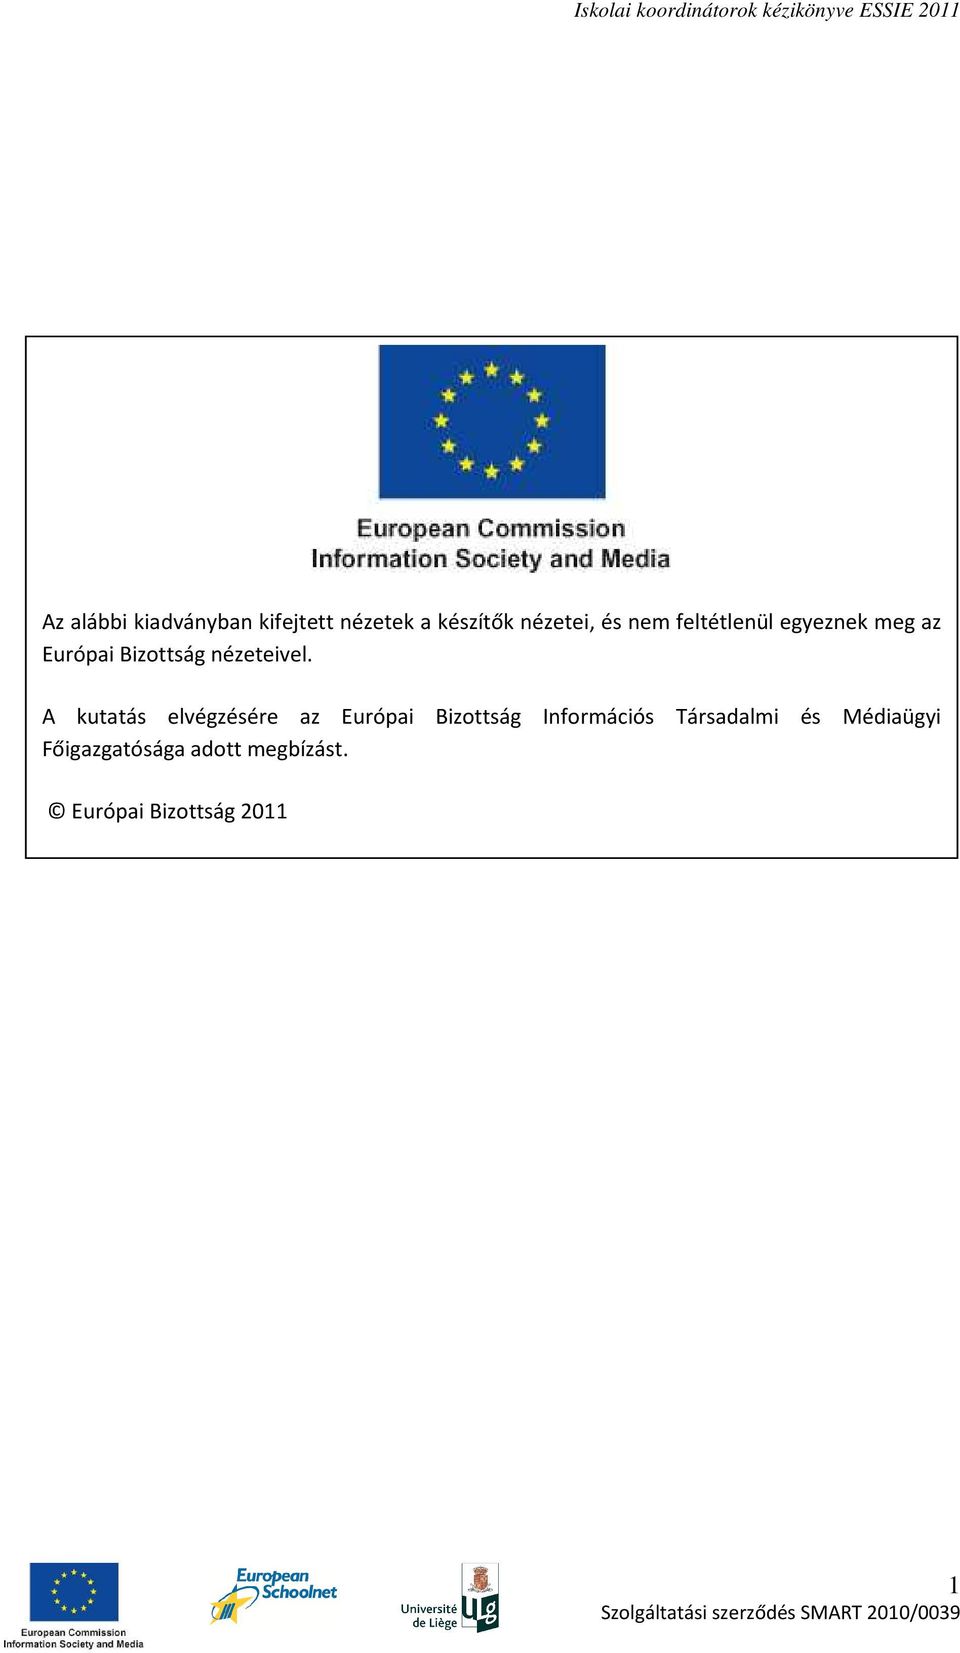 A kutatás elvégzésére az Európai Bizottság Információs